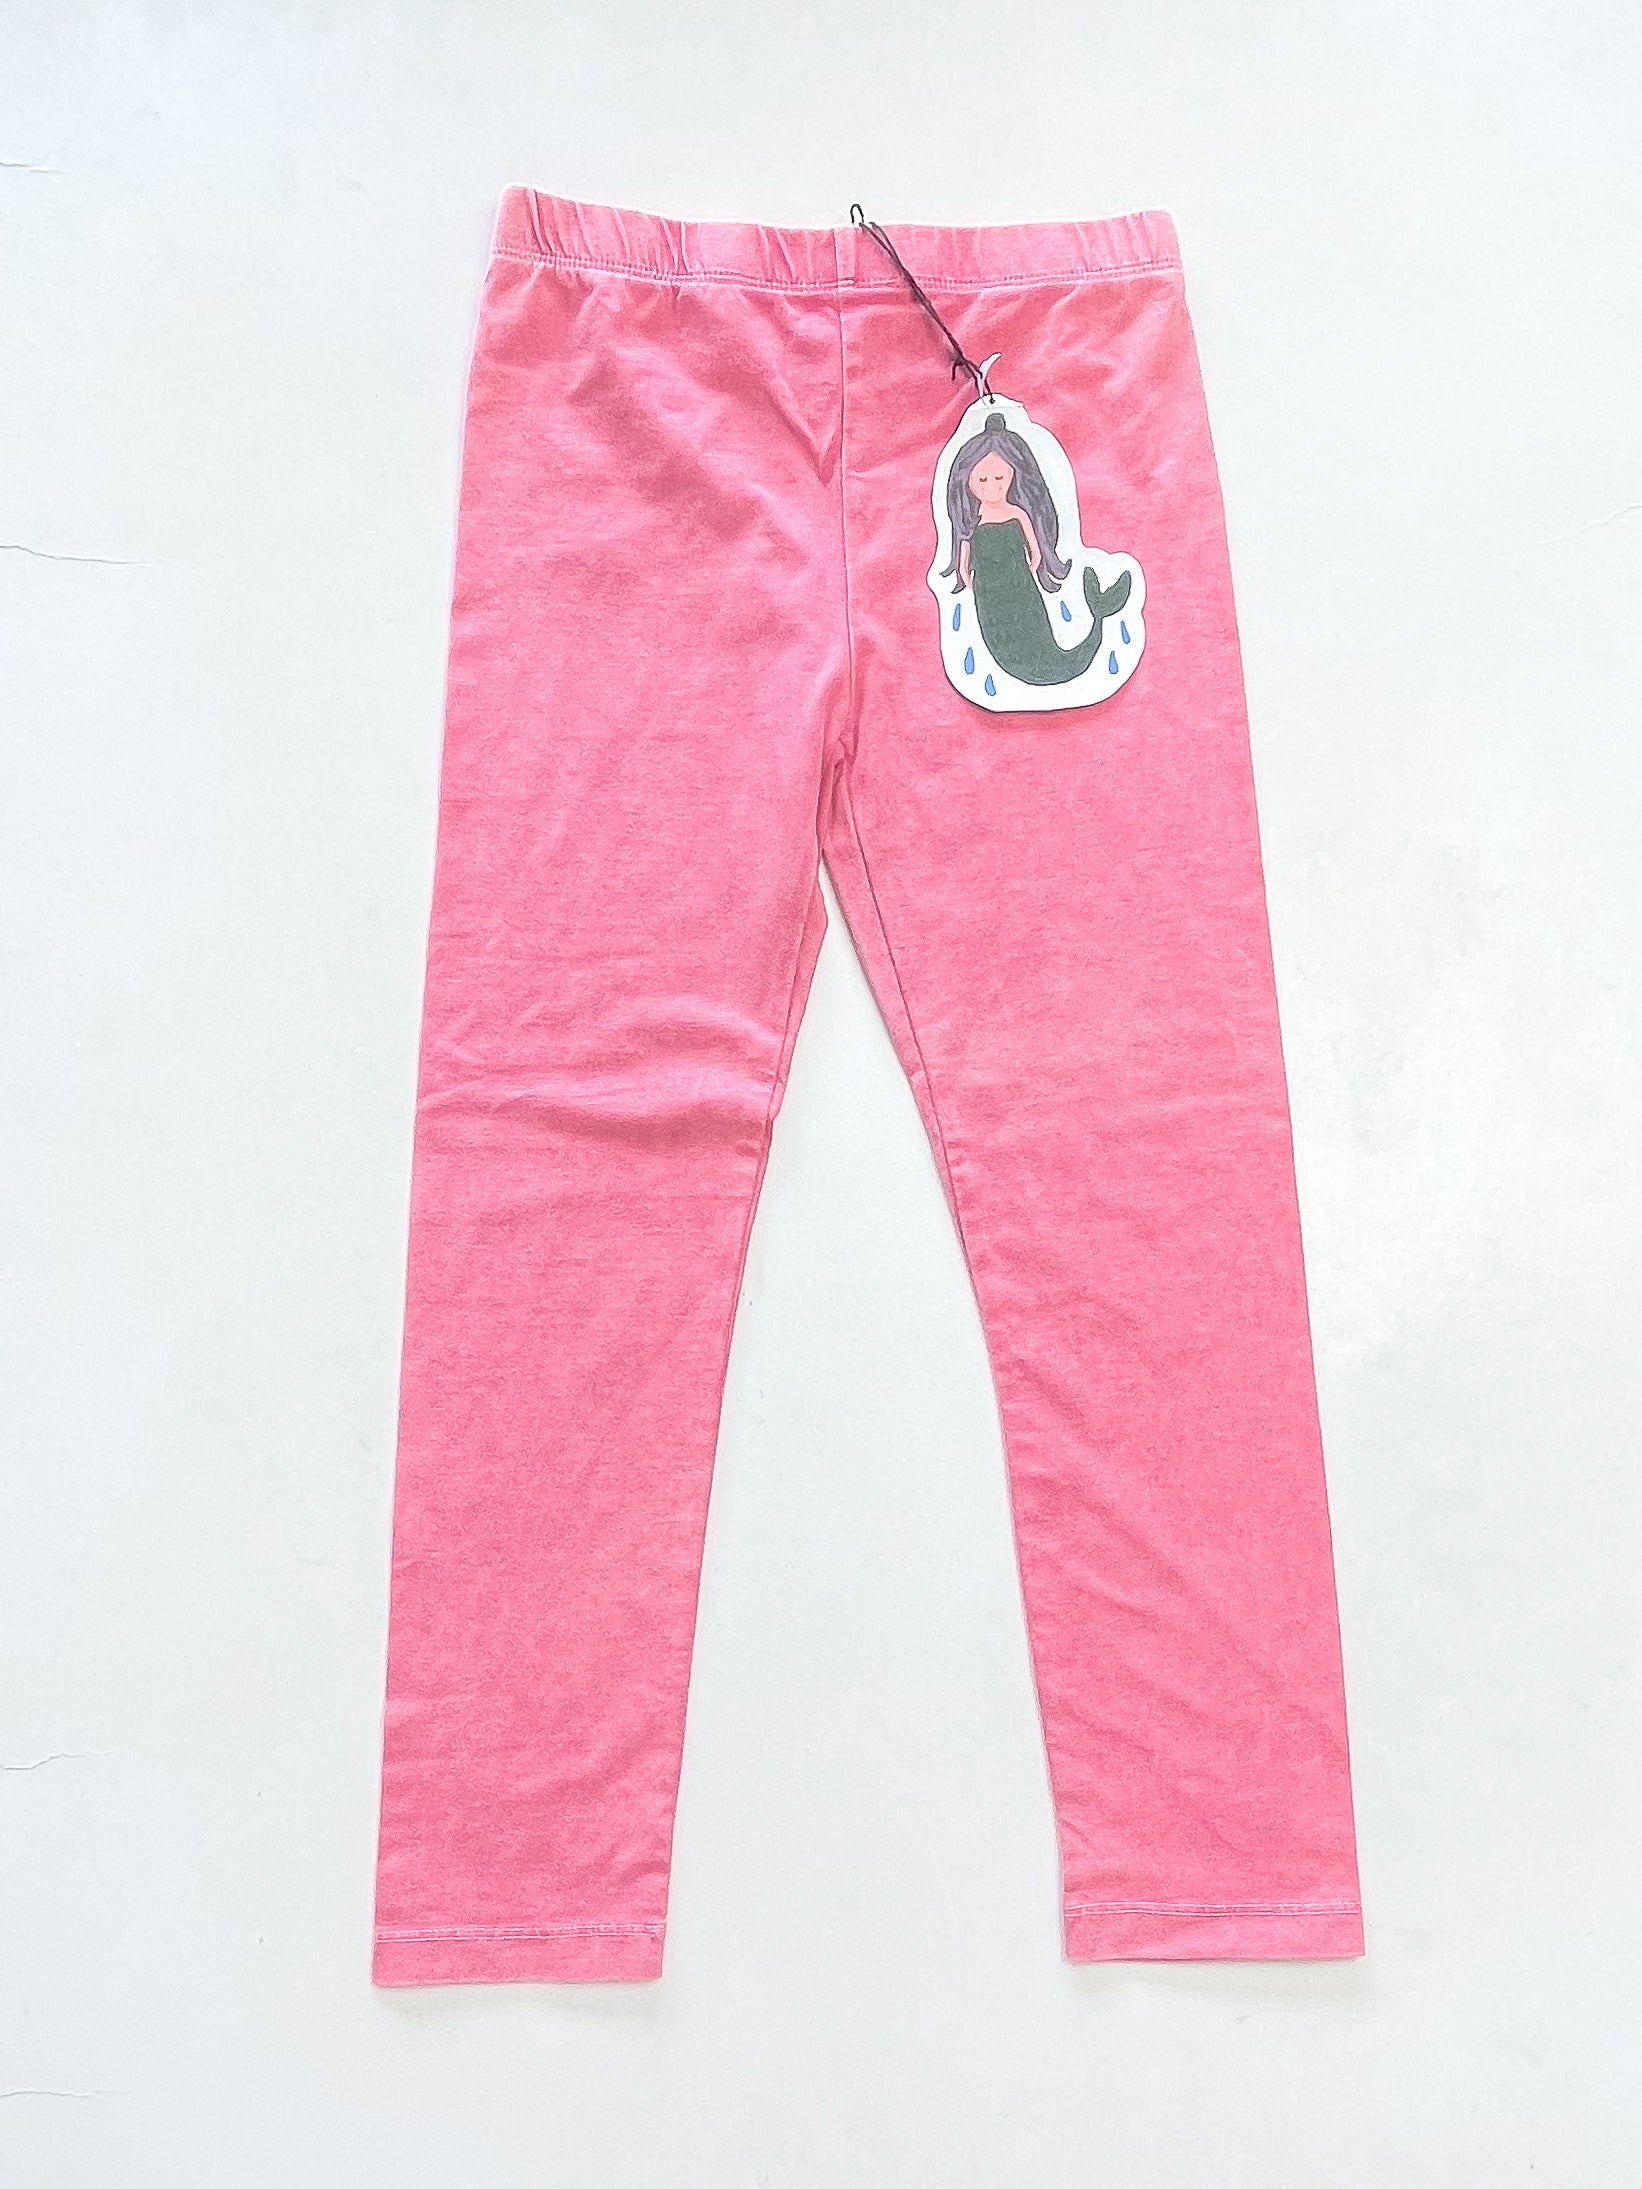 BNWT Minti bright pink wash leggings (6y)